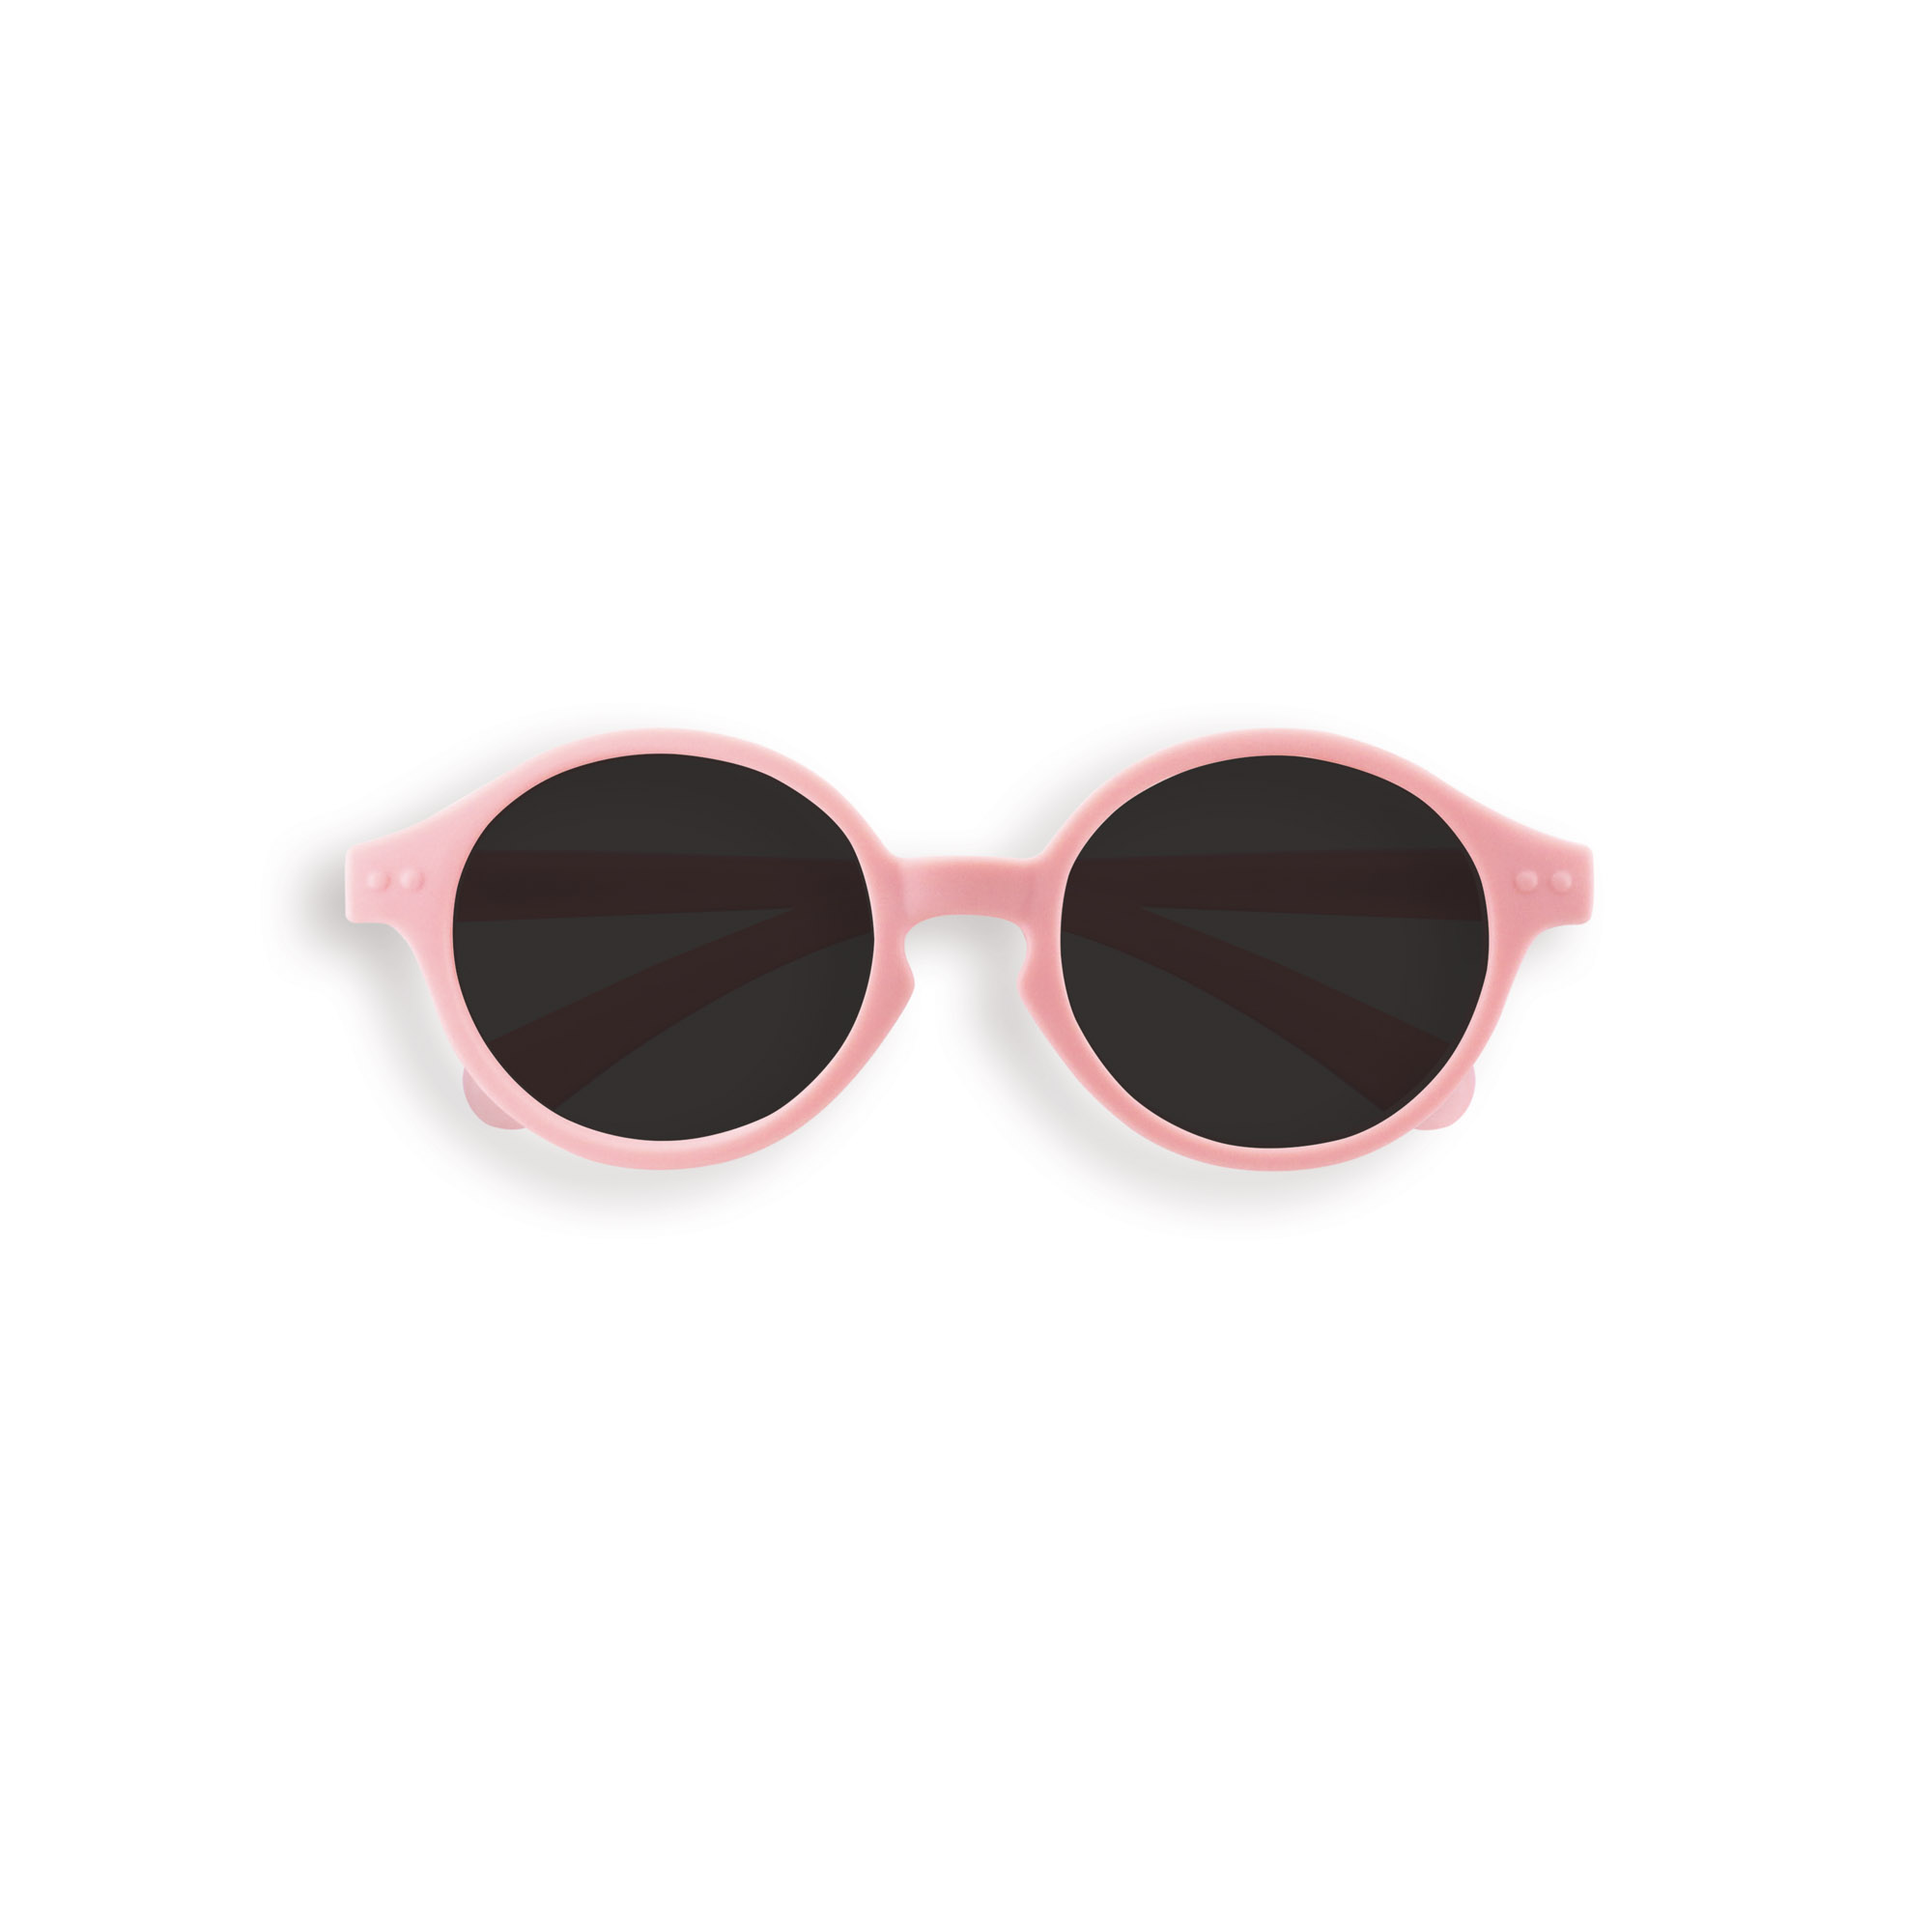 meisijia 1 paire de lunettes de soleil en silicone pour enfants Anti Slip Ear Hooks Holders rose rose 